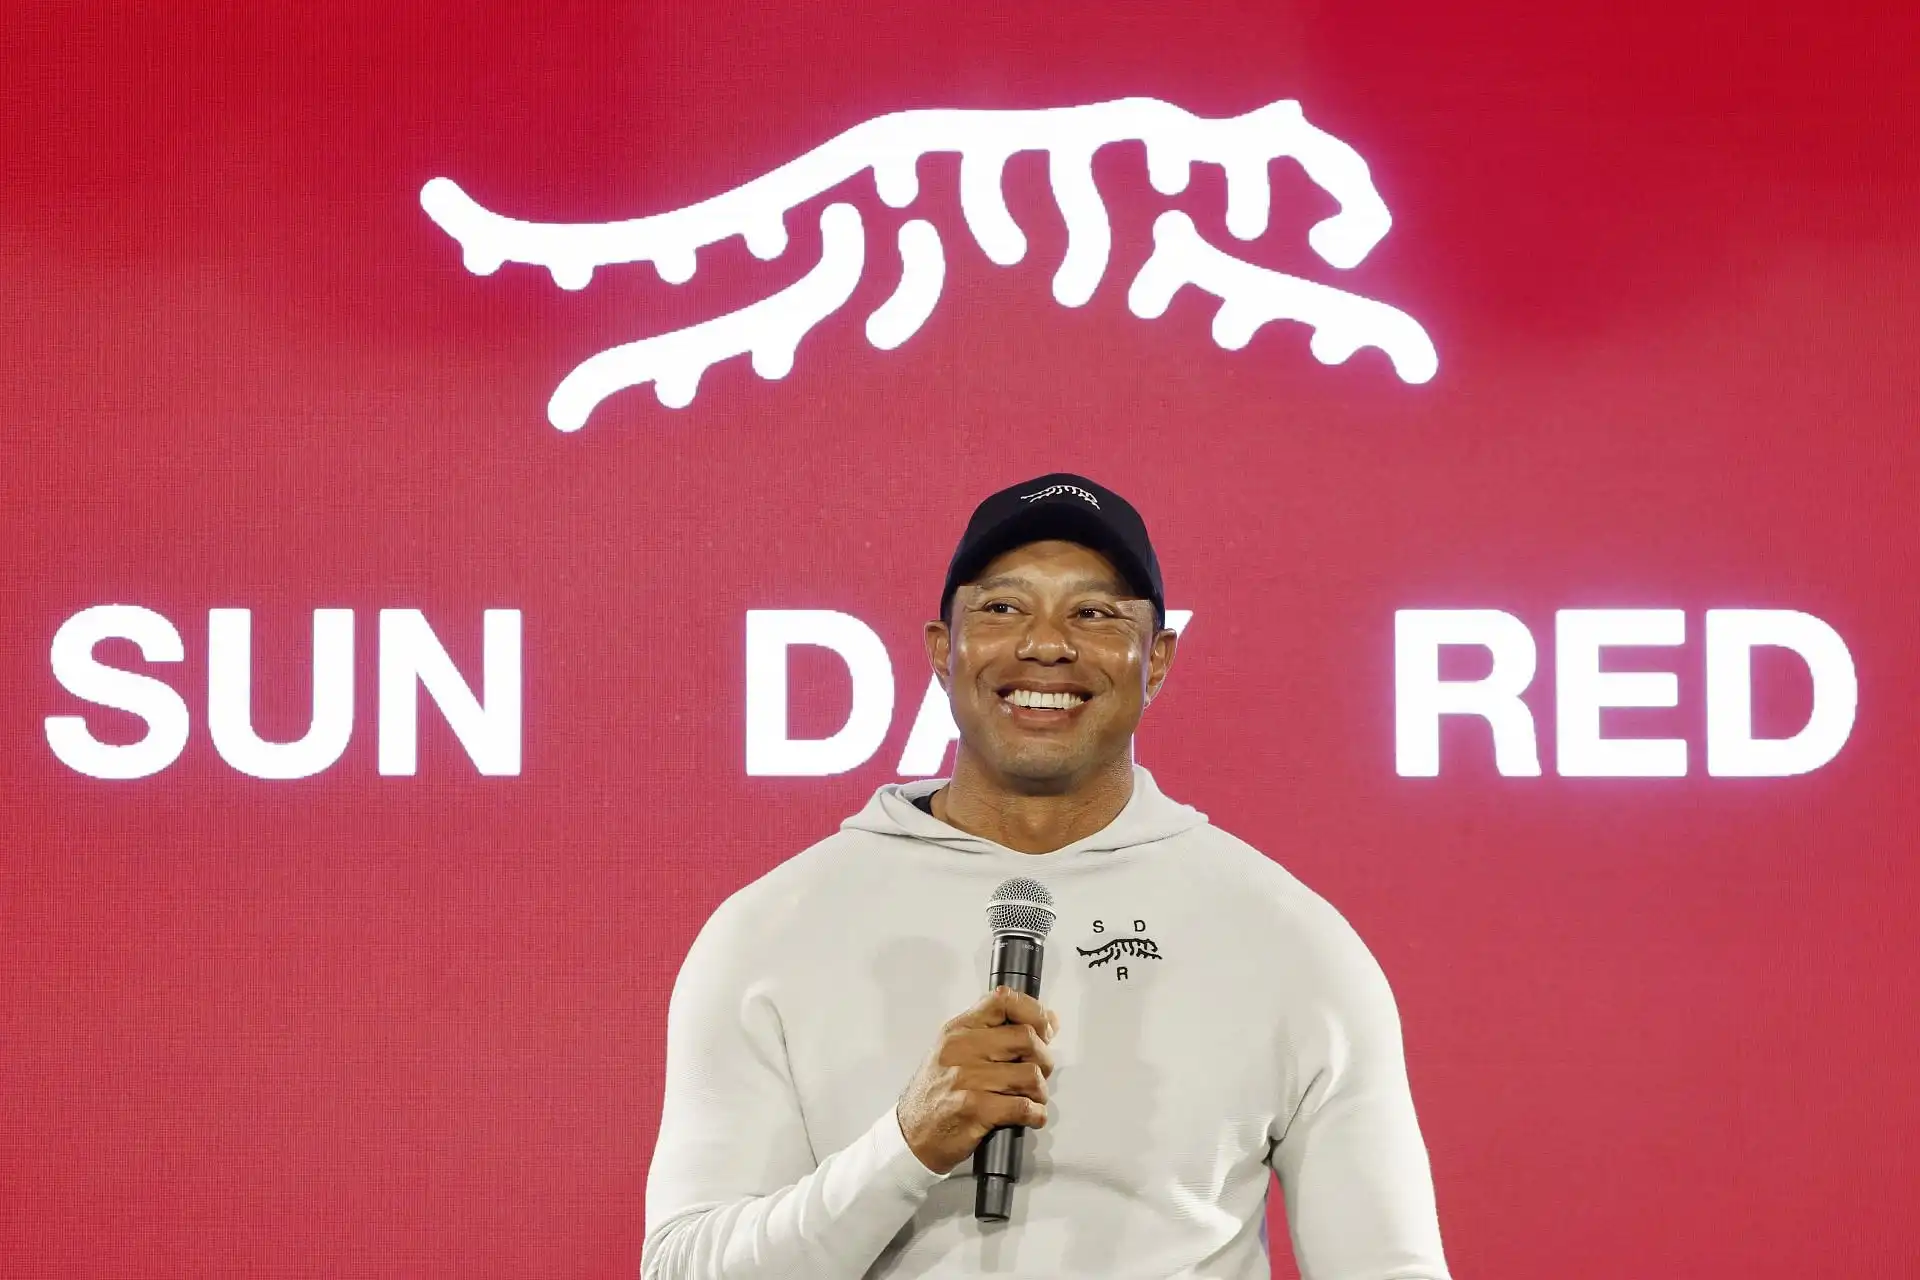 Tiger Woods espera arruinar su logotipo de Sunday Red por una razón única